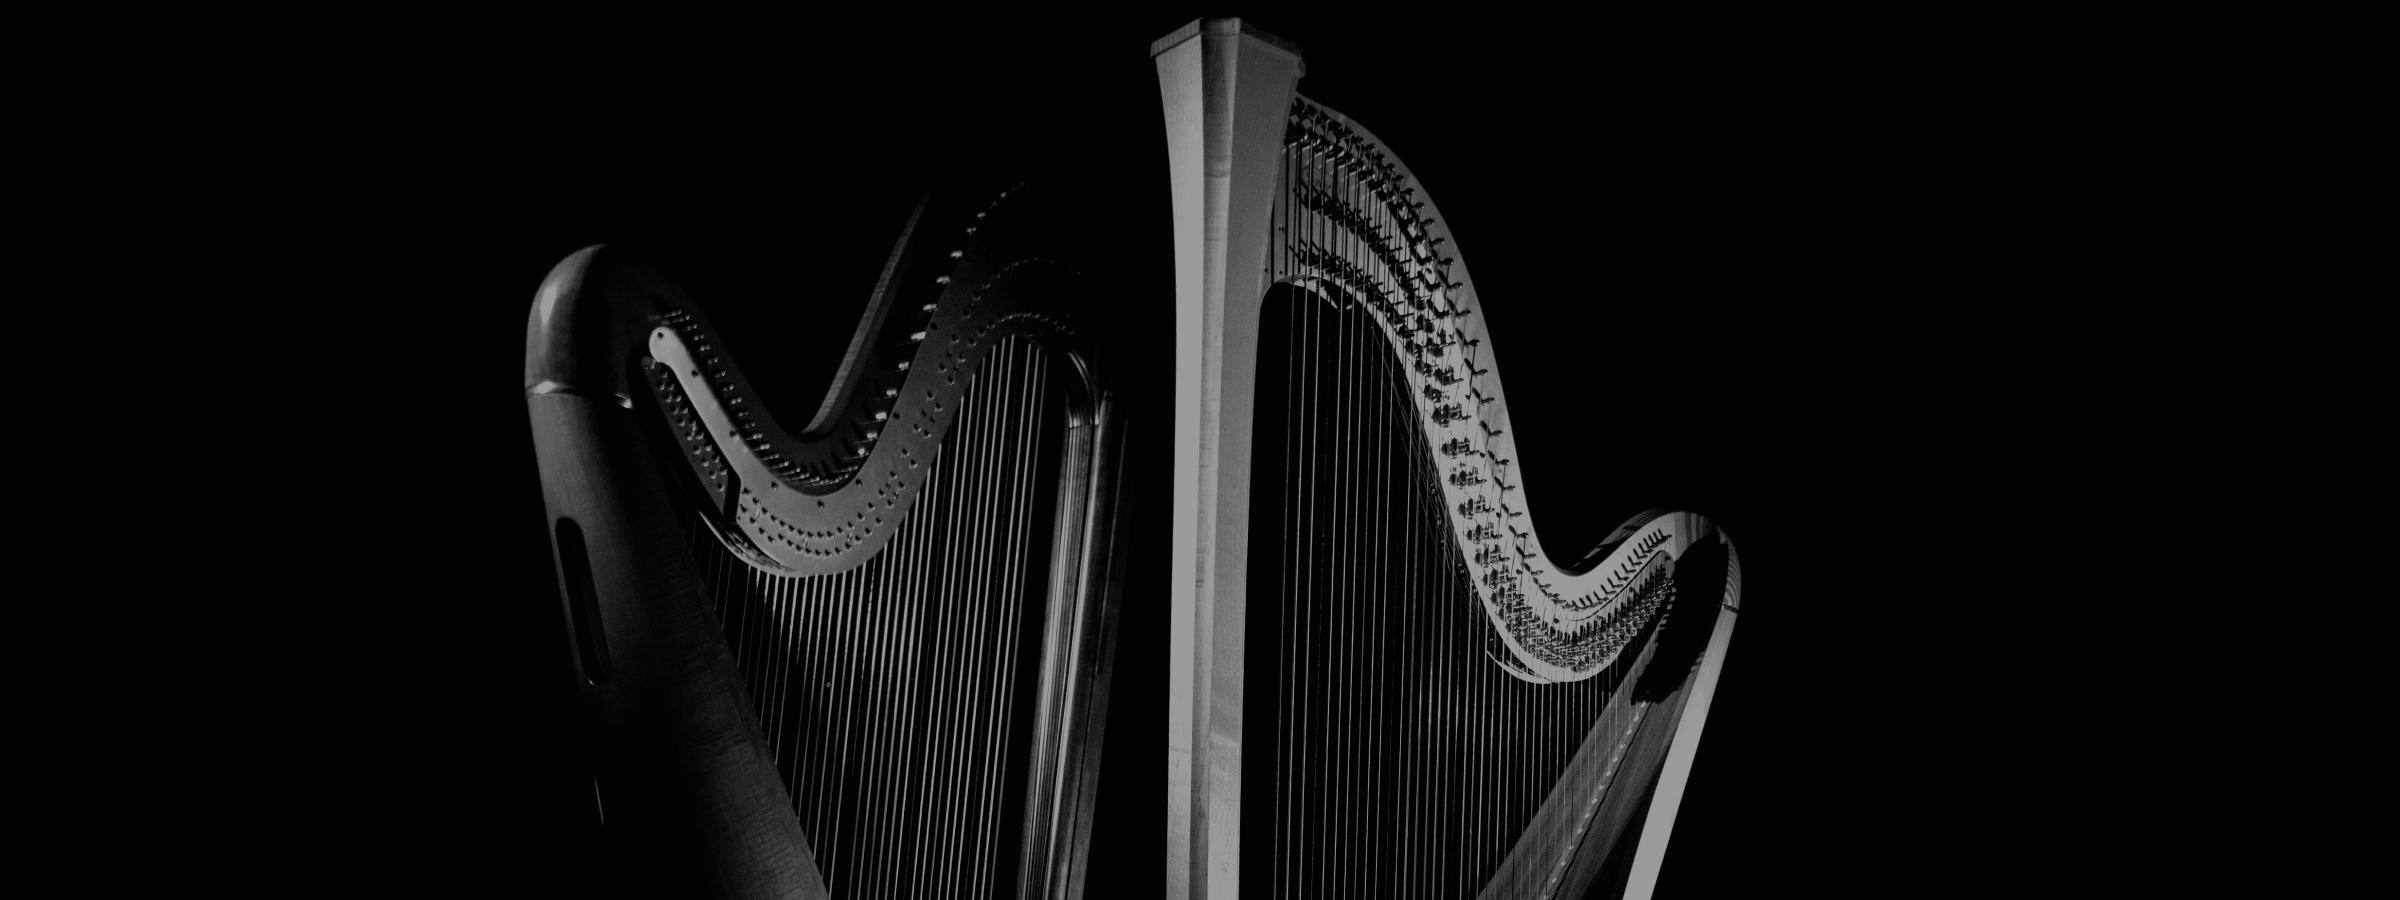 Detail Images Of Harps Nomer 55